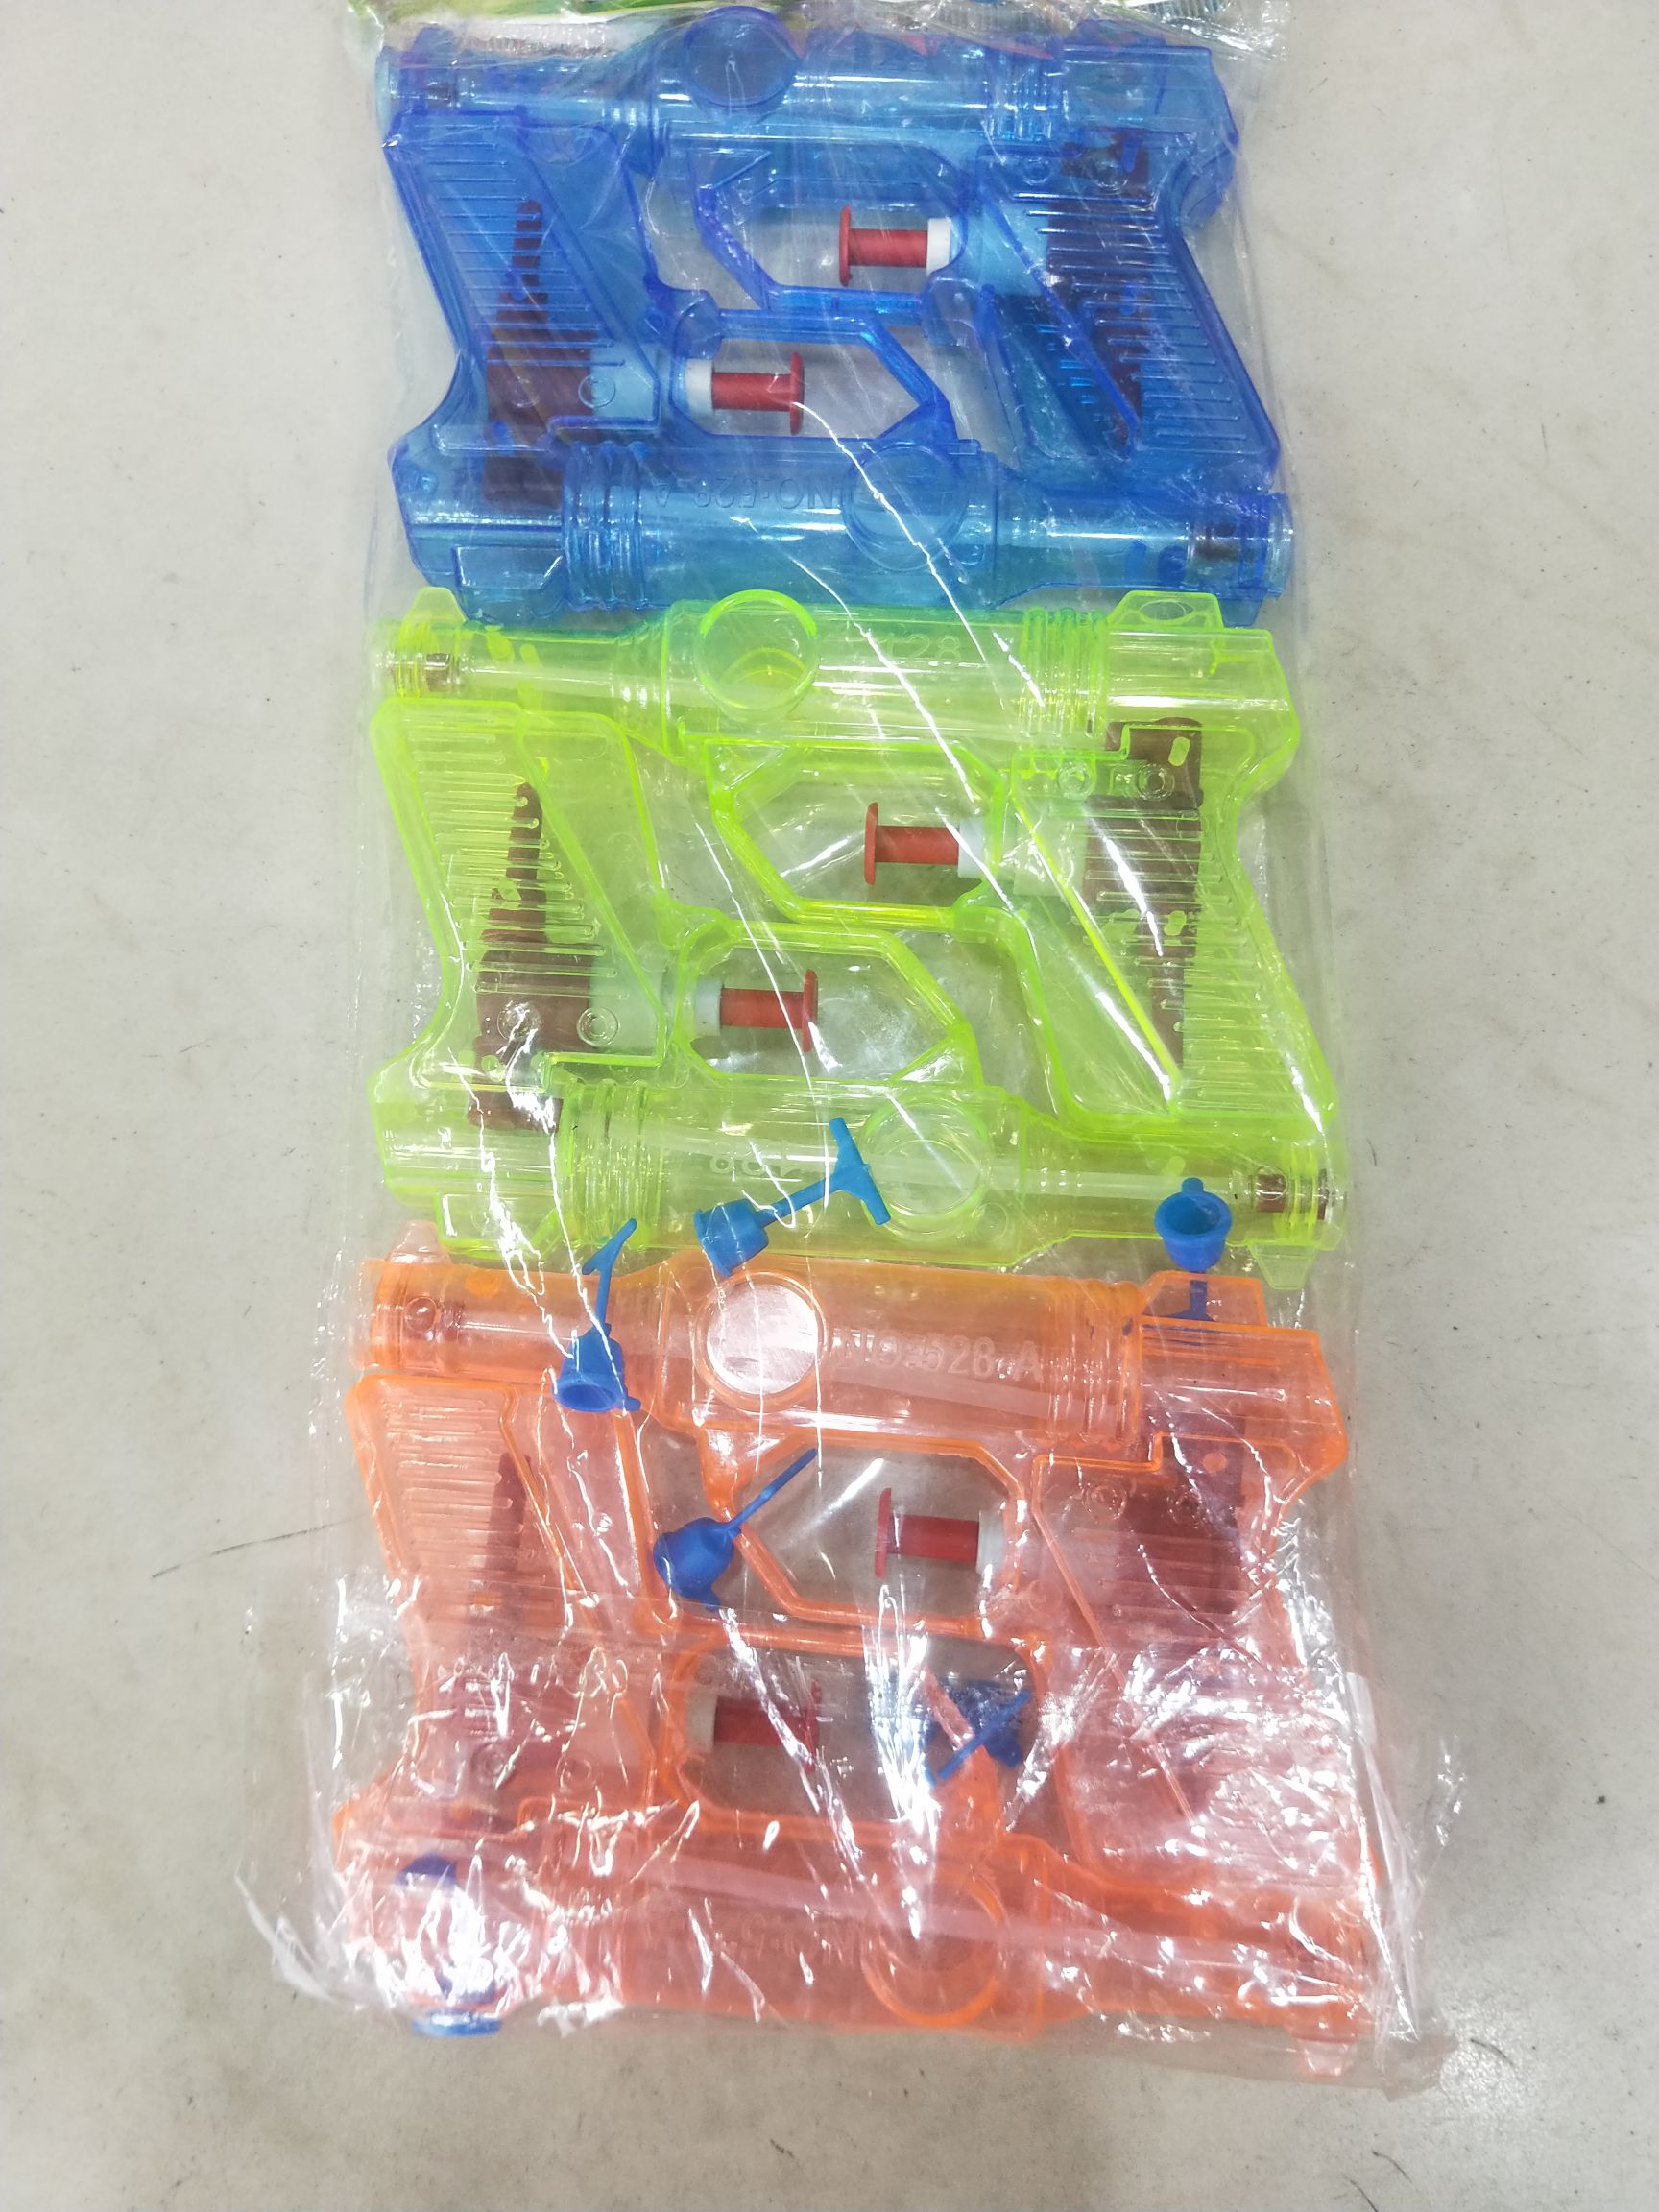 塑料透明普通水枪玩具戏水玩具批发图